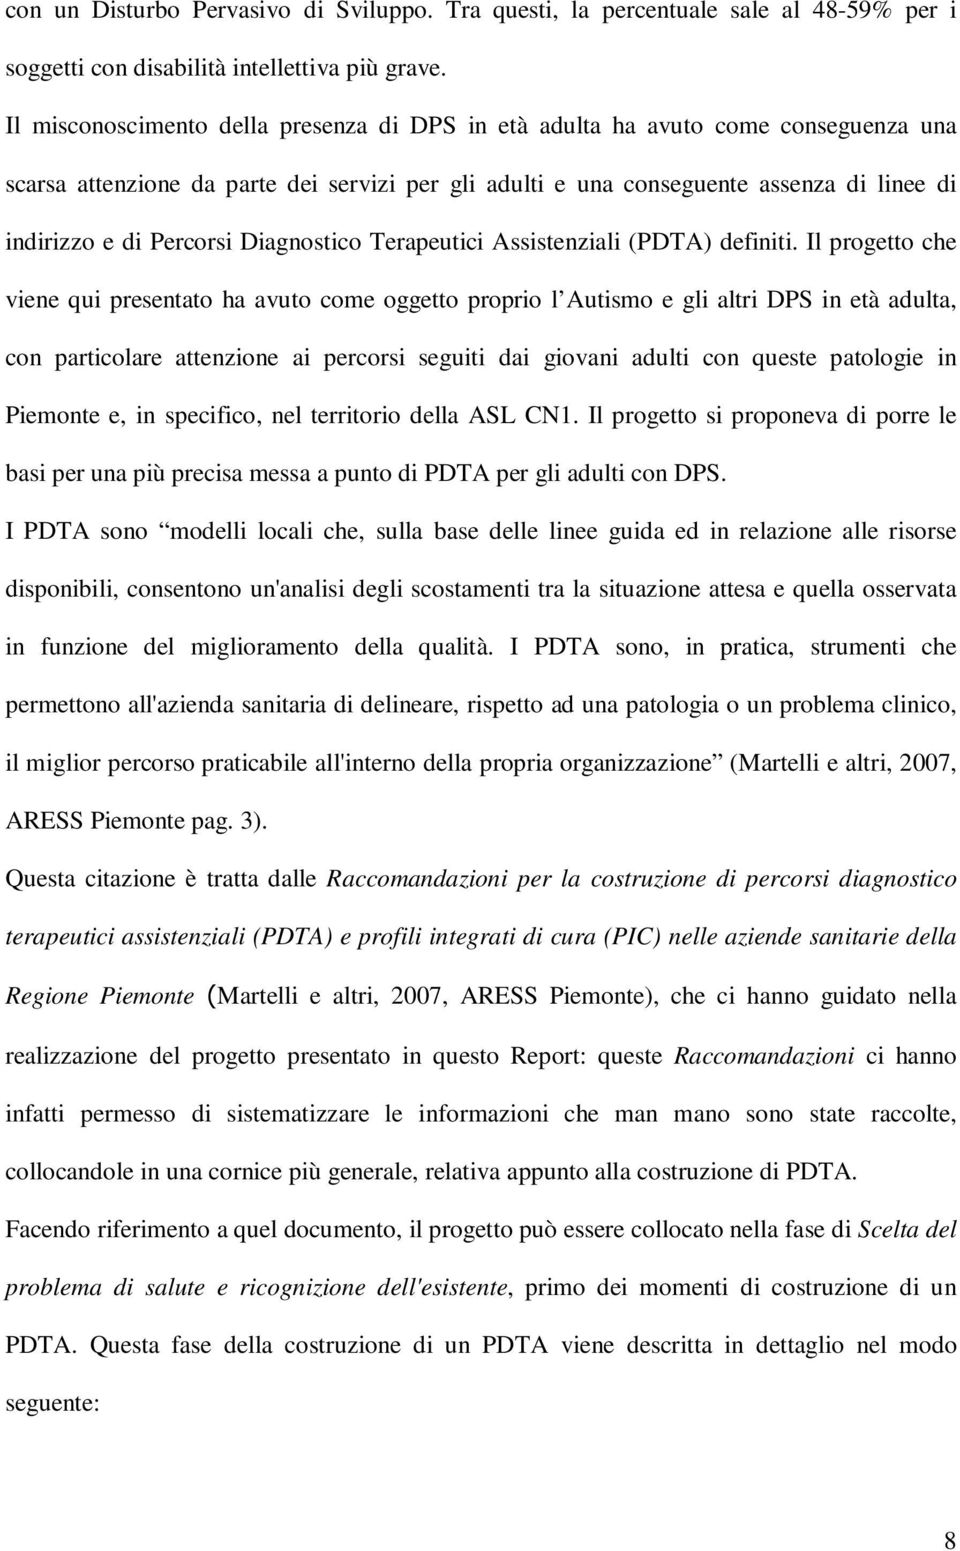 Percorsi Diagnostico Terapeutici Assistenziali (PDTA) definiti.